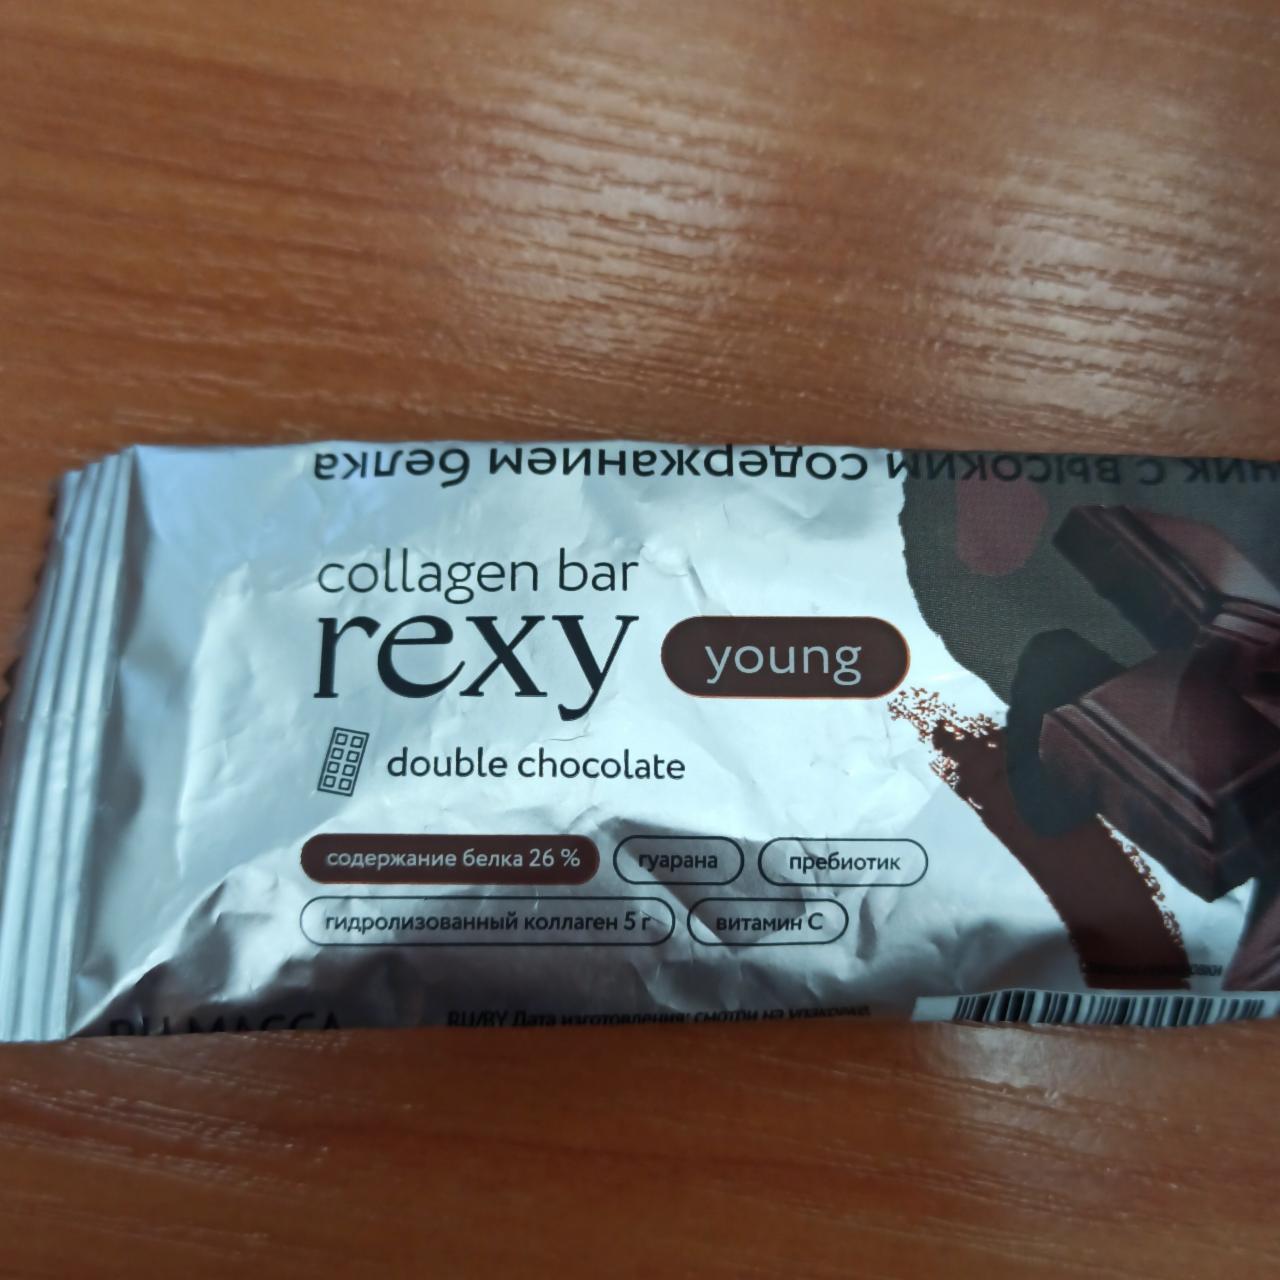 Фото - Collagen bar double chocolate батончик с коллагеном двойной шоколад Rexy